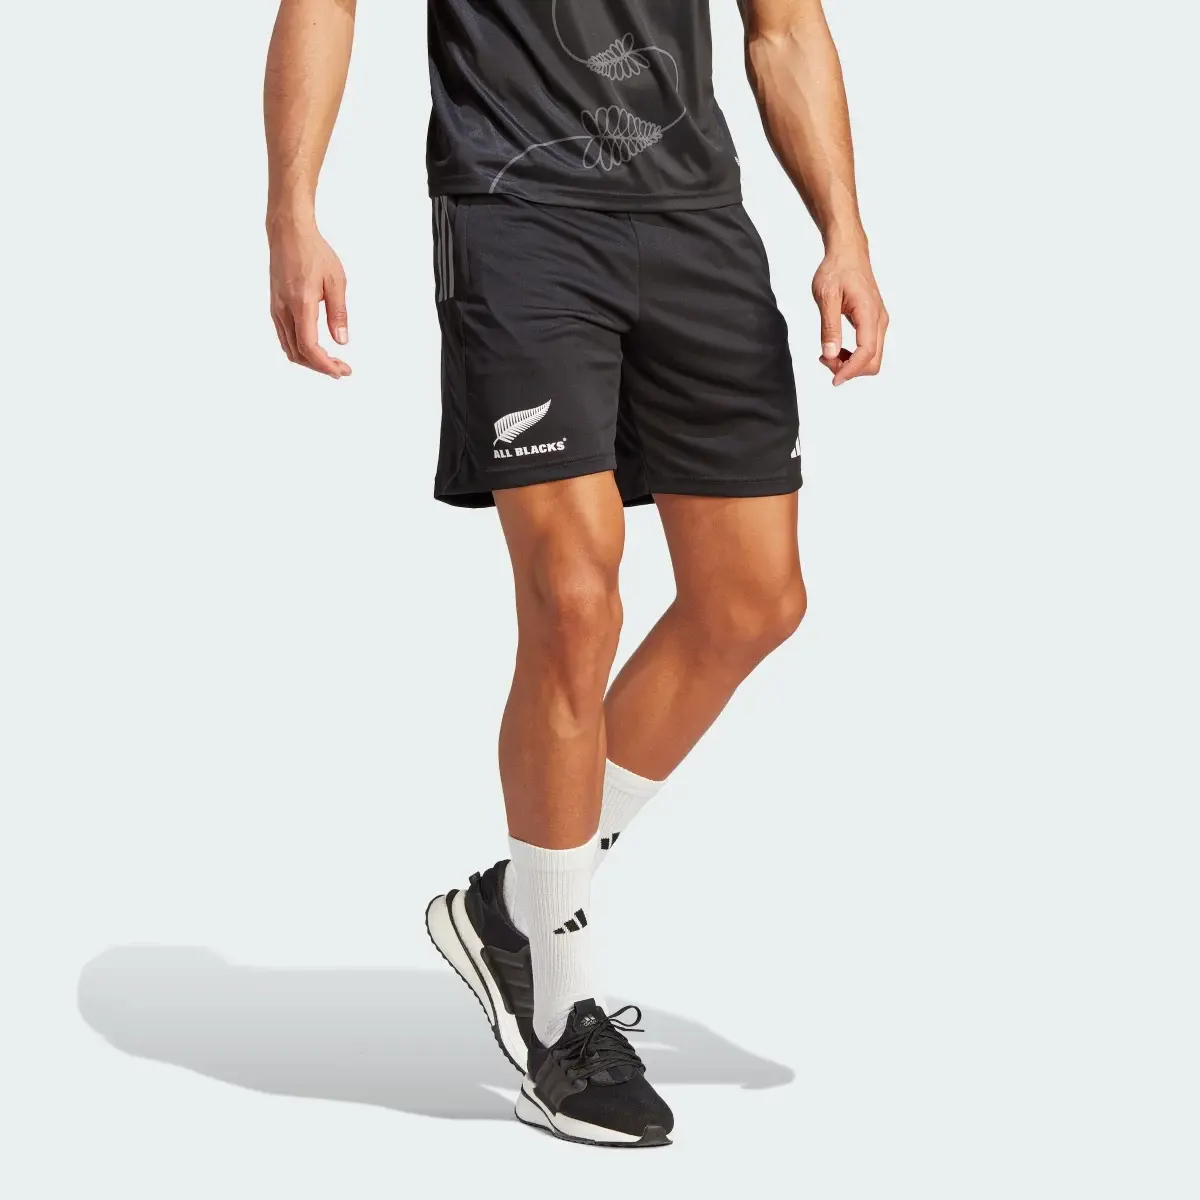 Adidas All Blacks Rugby Gym Shorts. 1